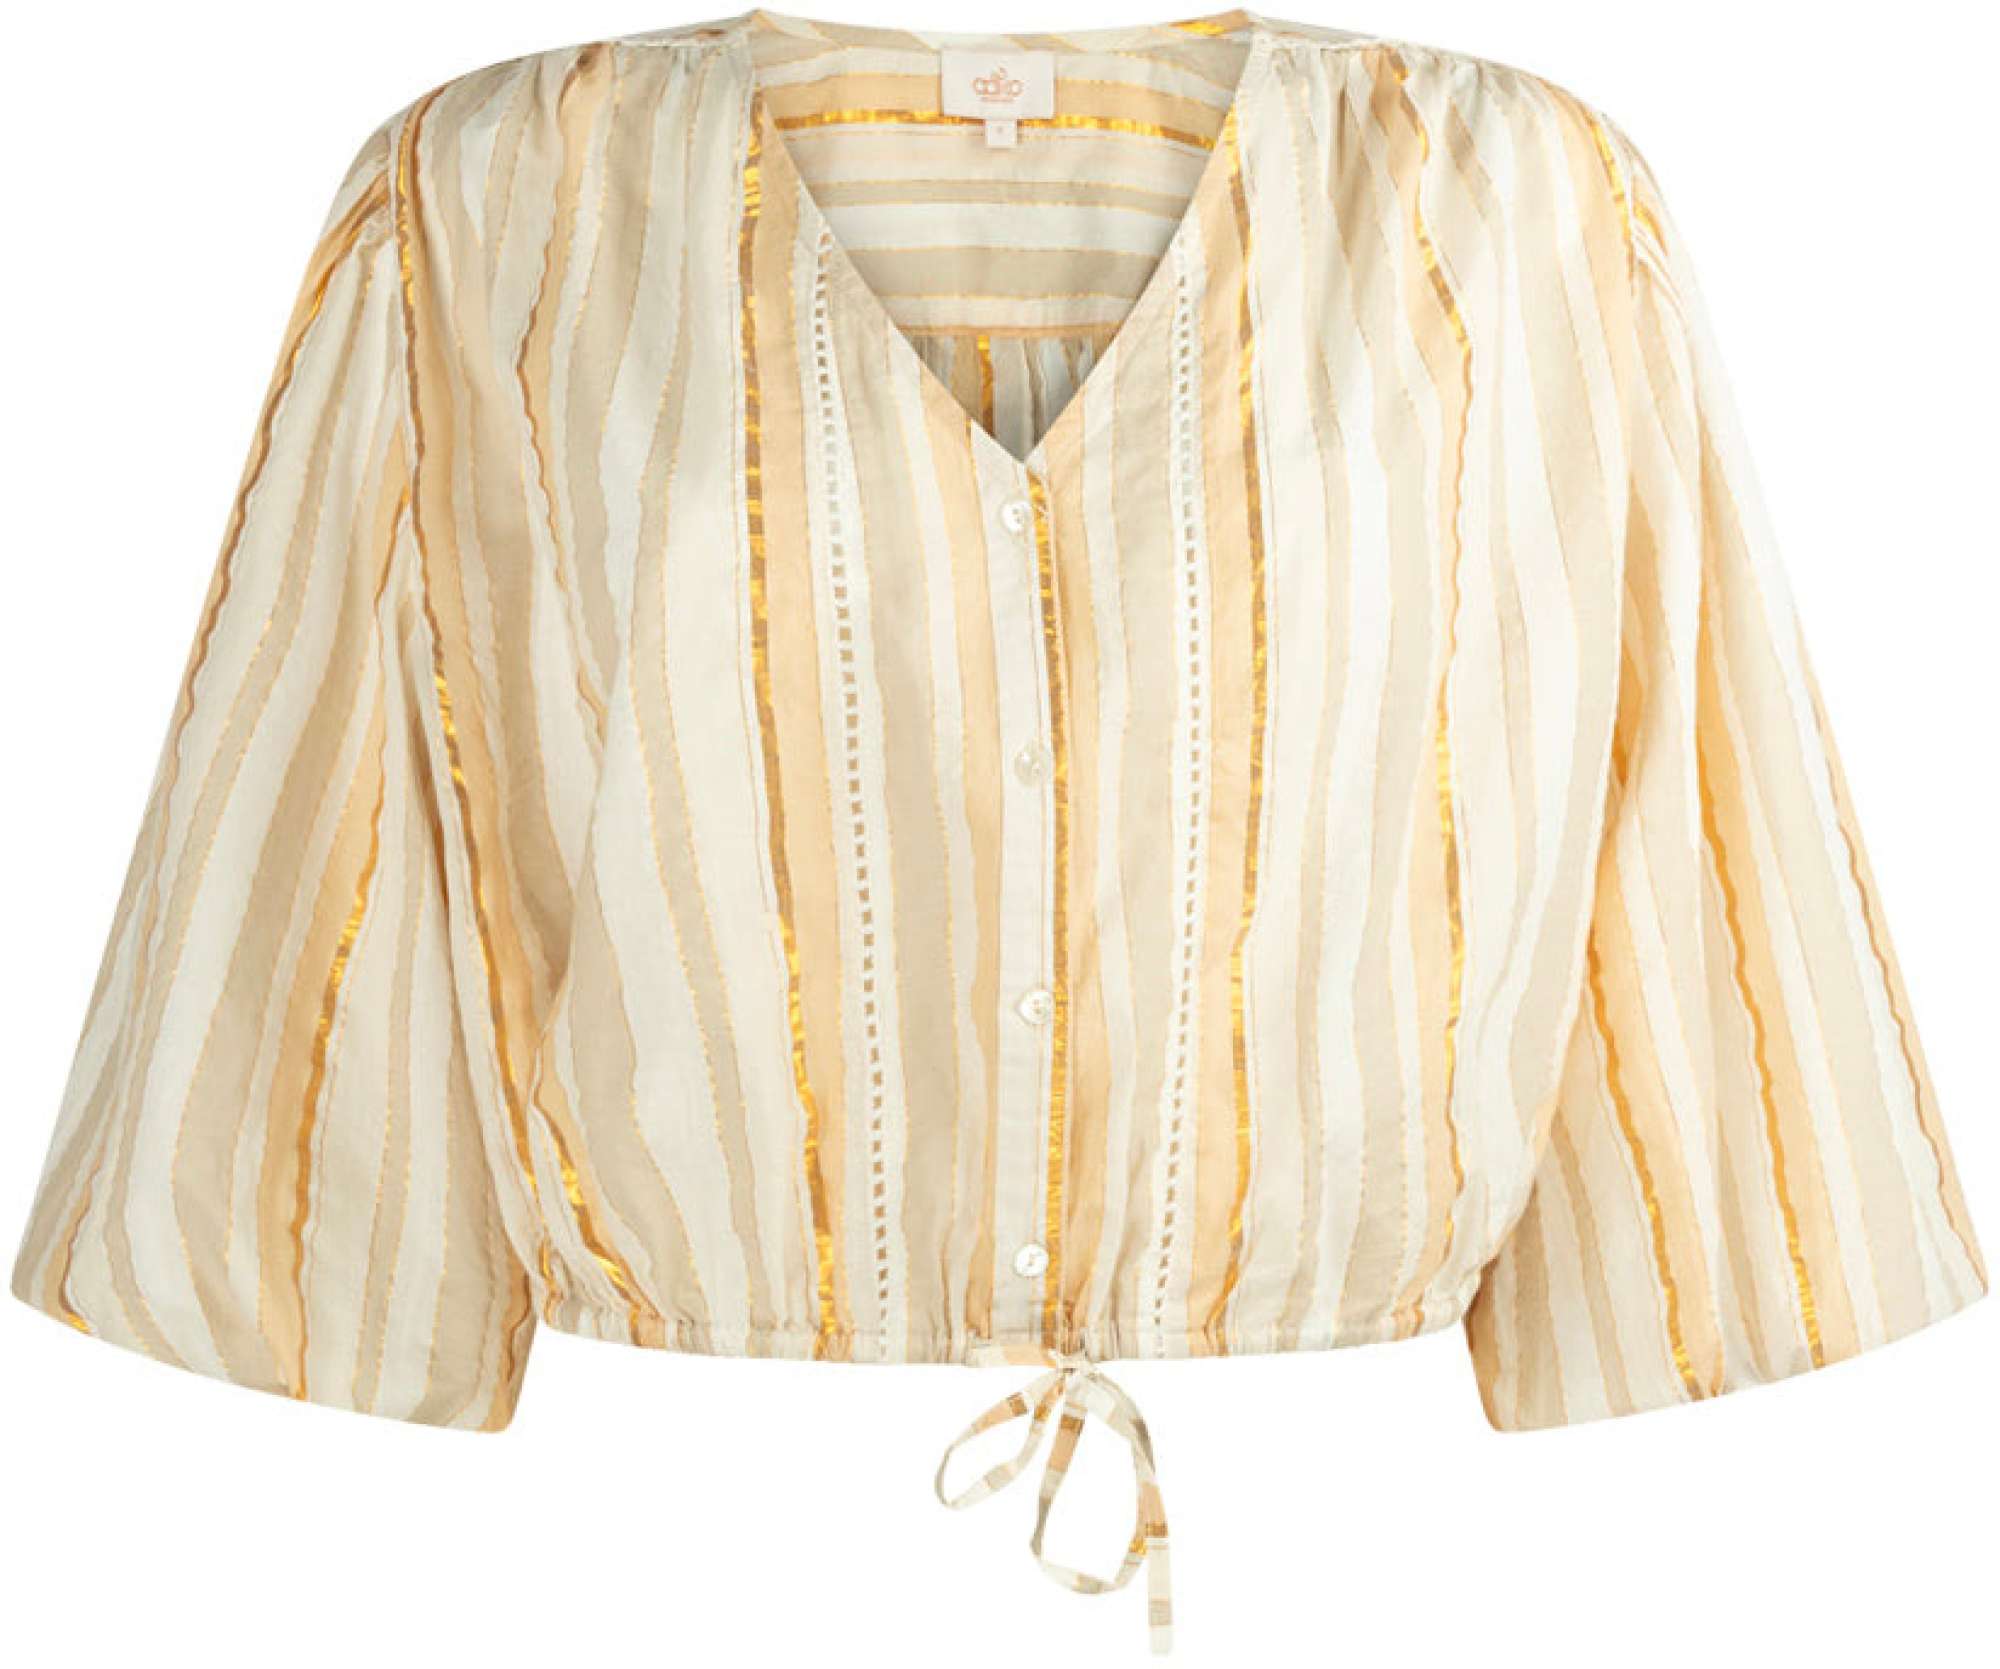 Afbeelding van Aaiko Birget blouse co 466 beige gold striped